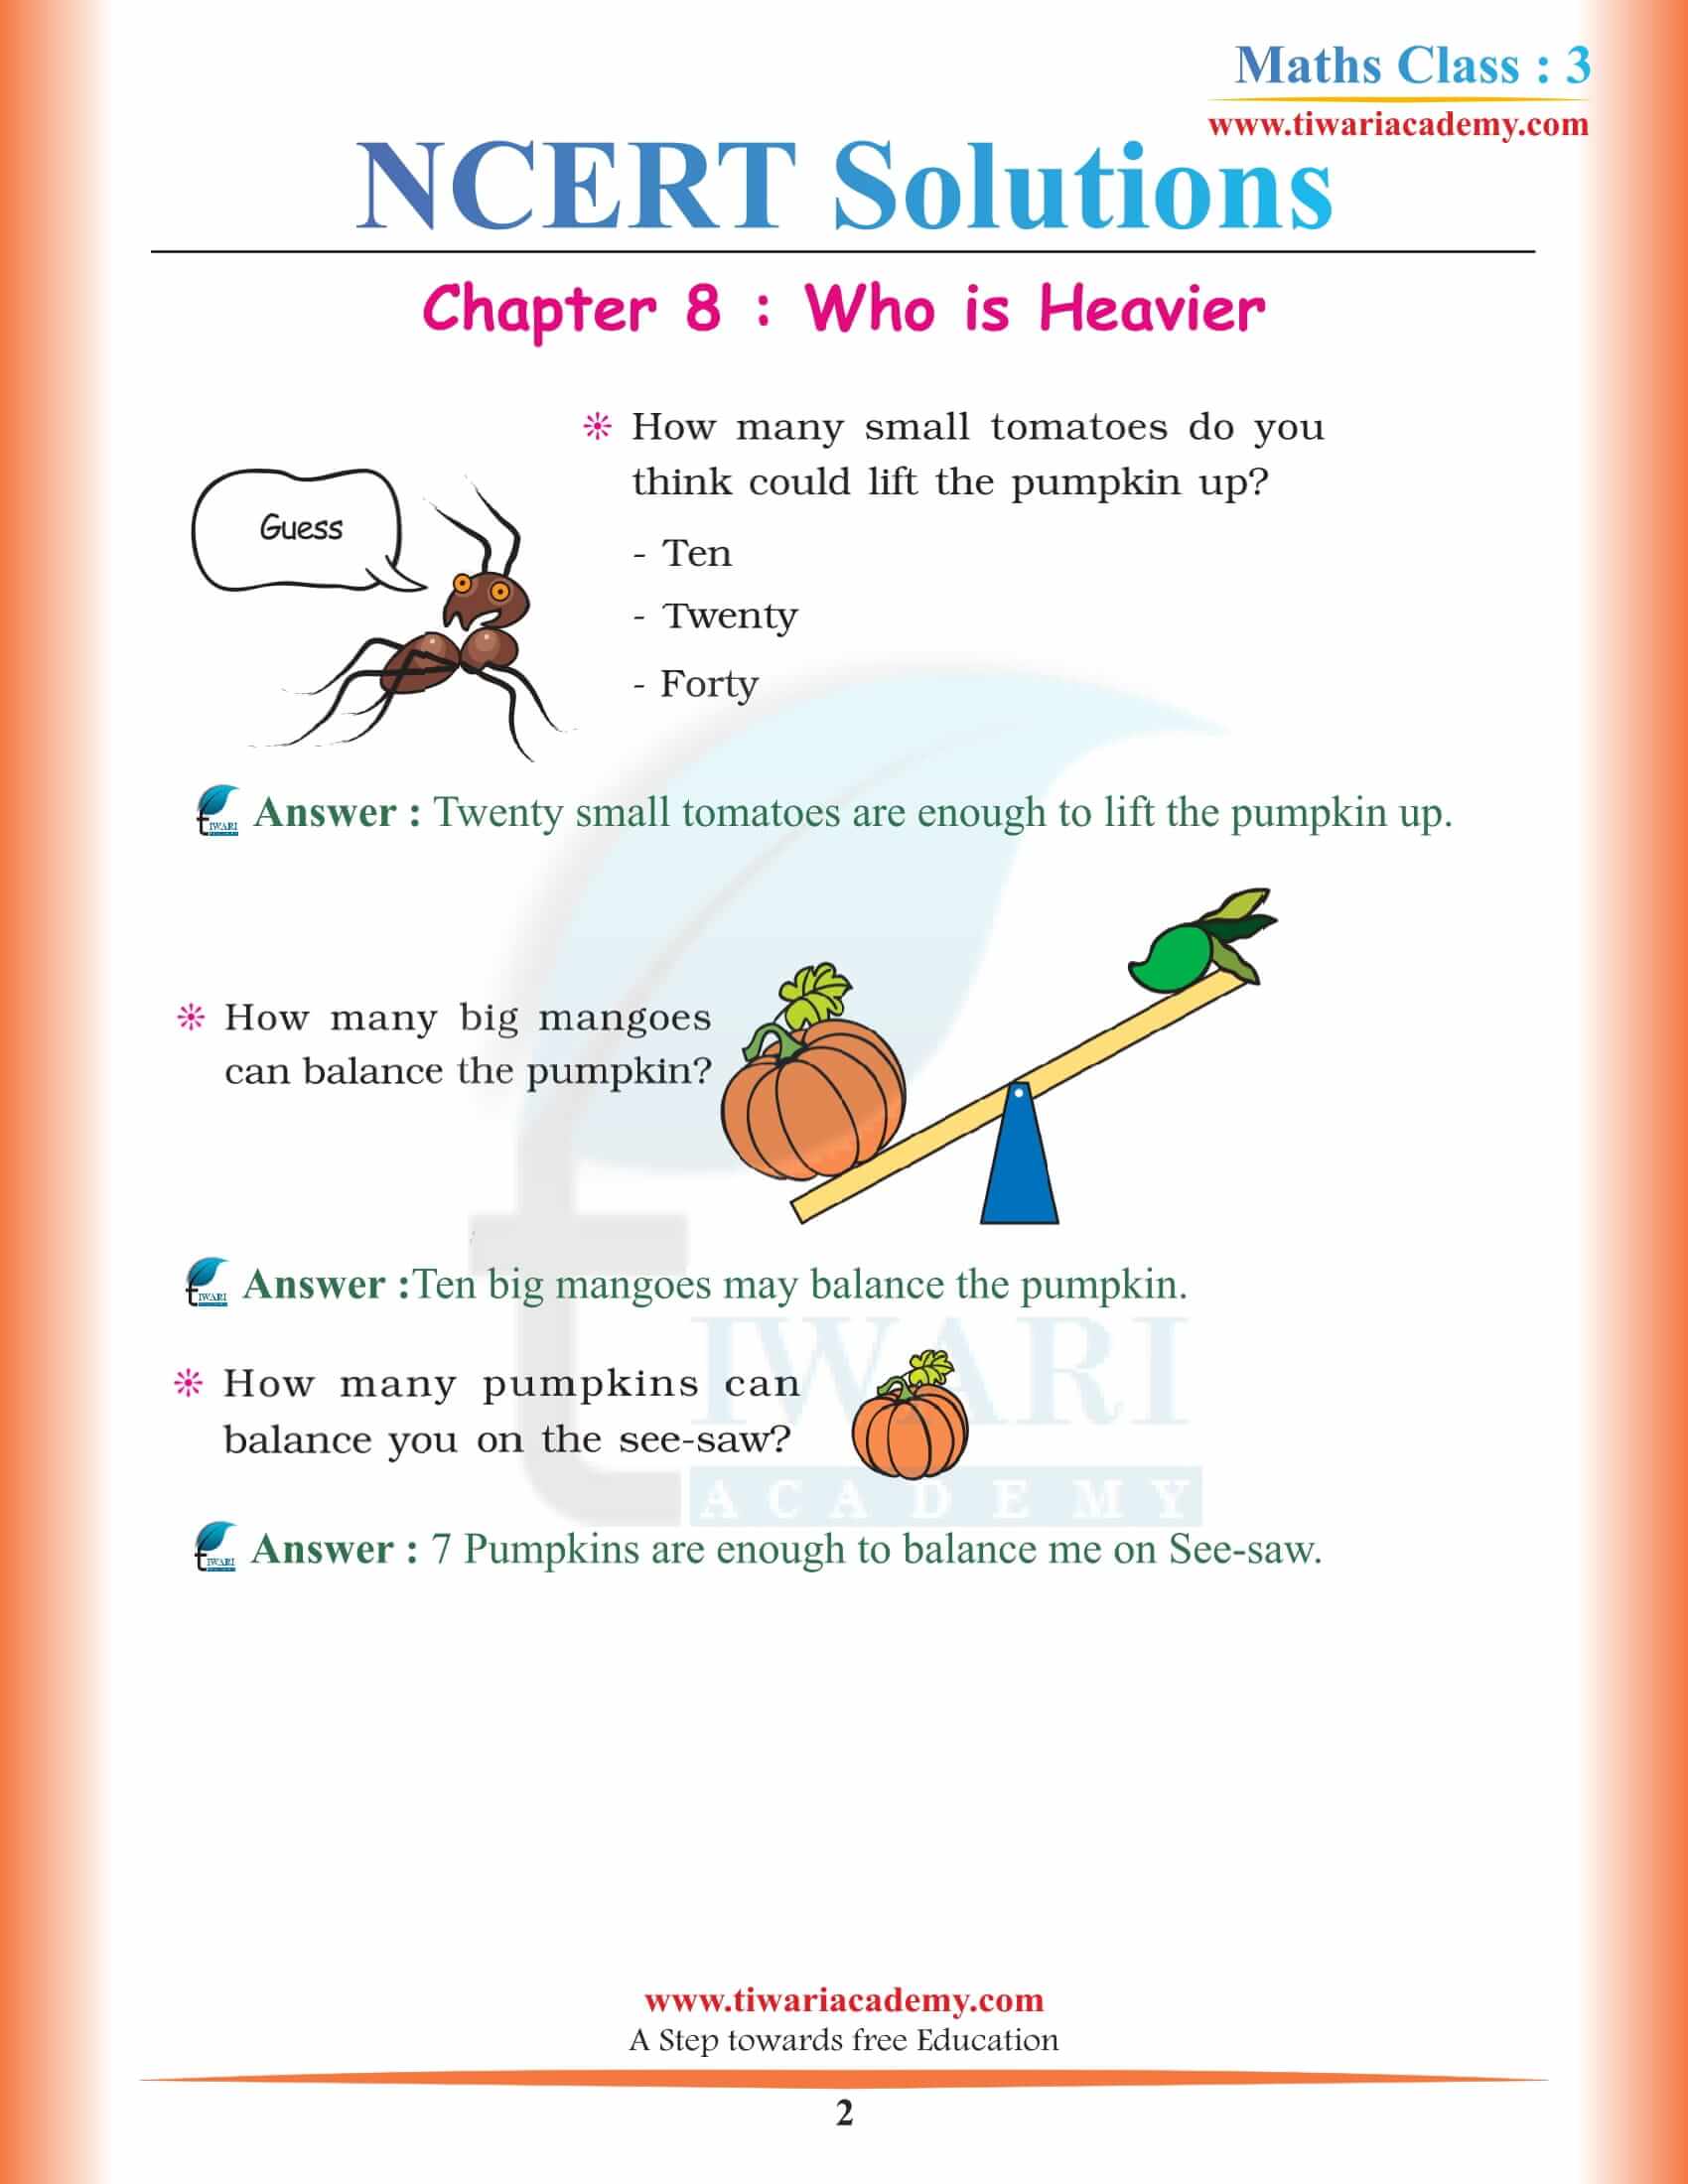 NCERT Solutions for Class 3 Maths Chapter 8